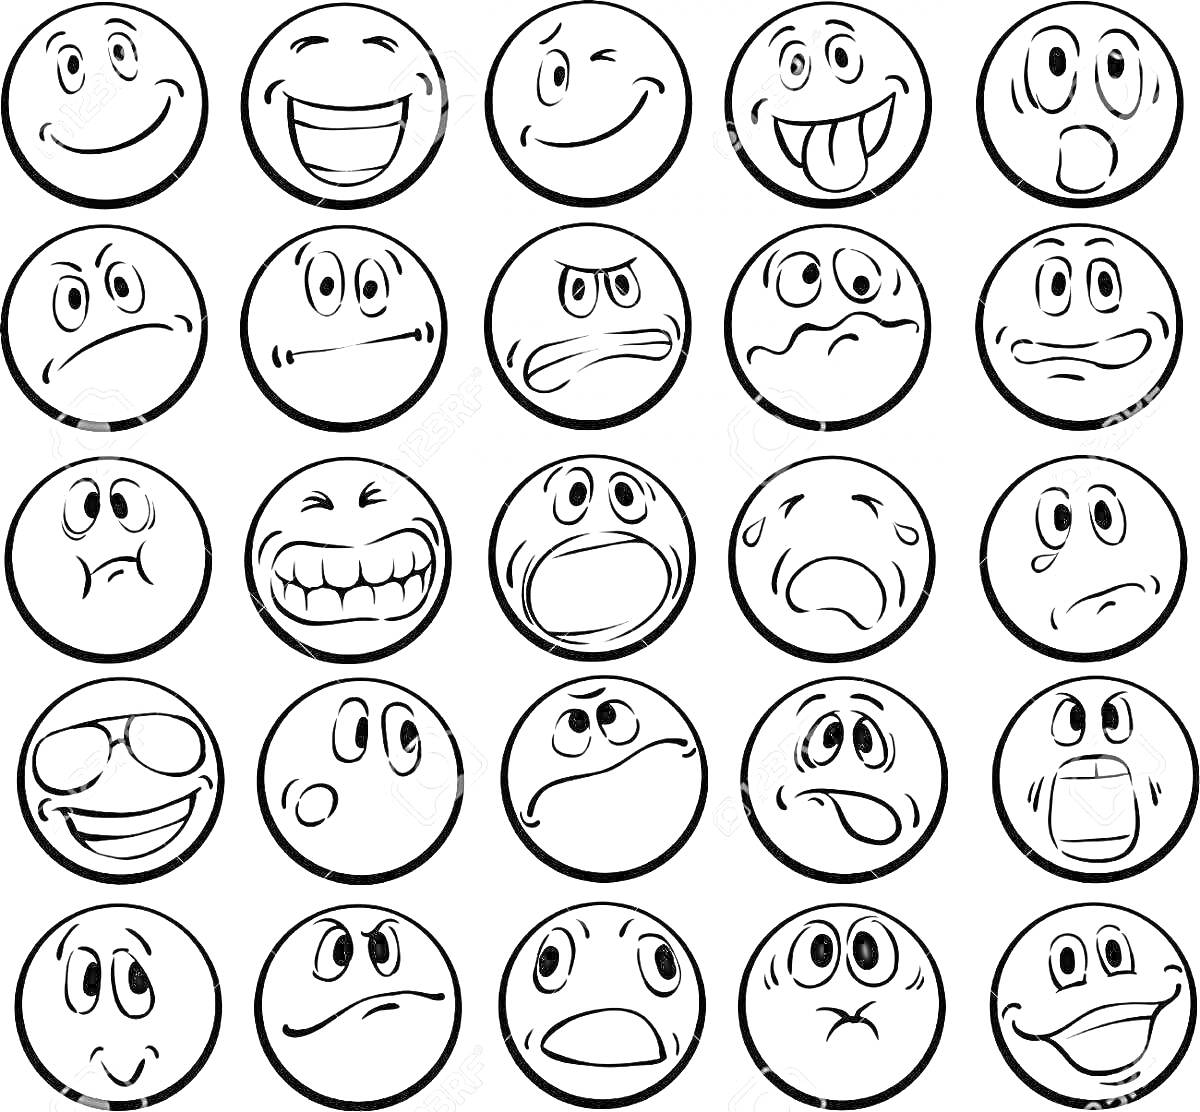 Раскраска Смайлики с разными выражениями лиц